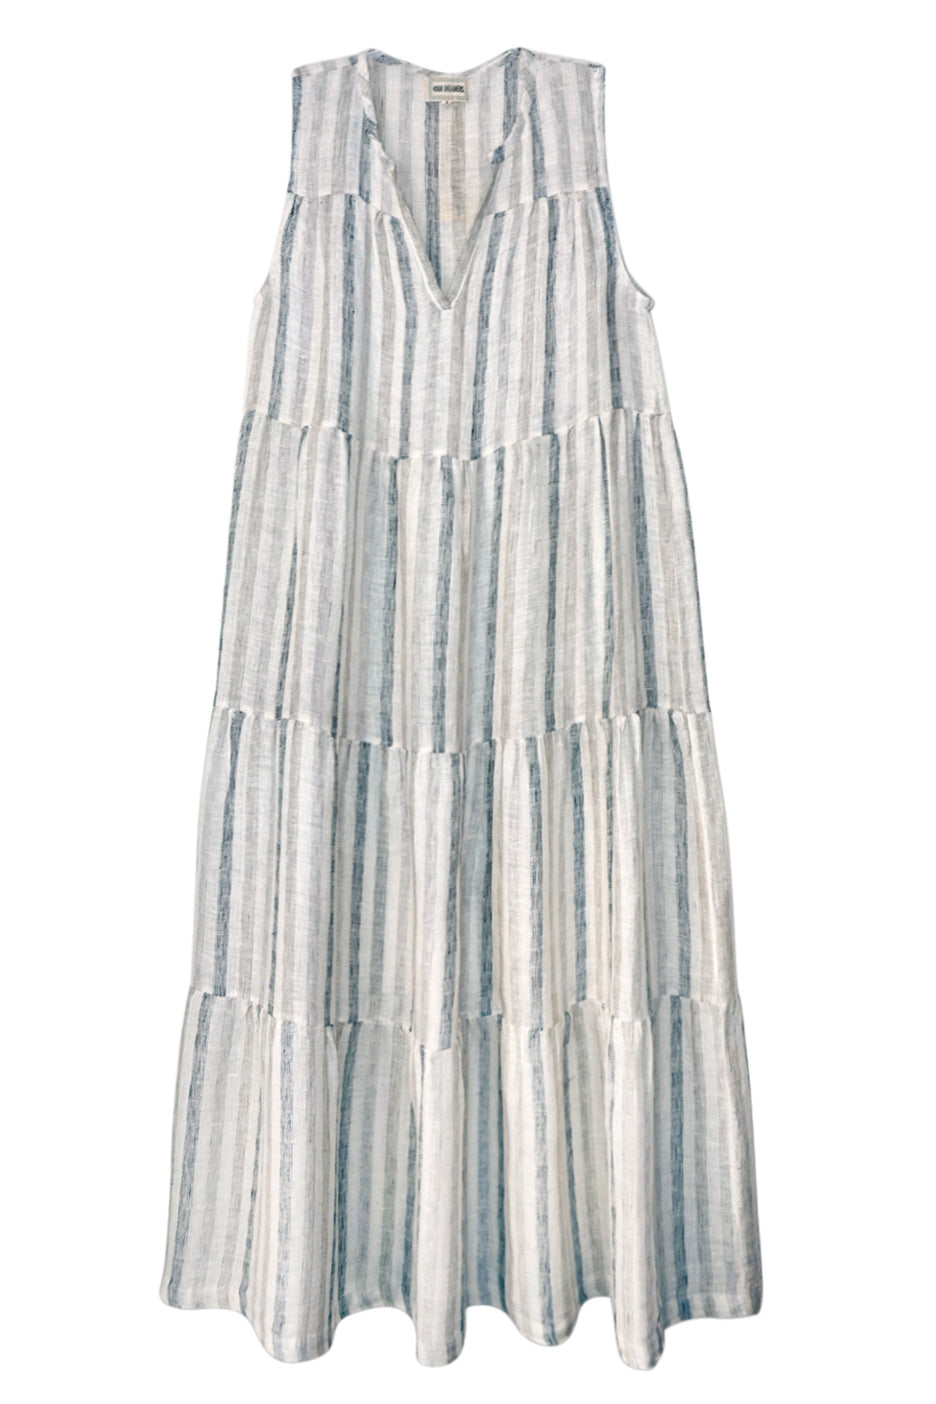 MEGAN Sheer Stripe Sleeveless Maxi Dress, Smoke